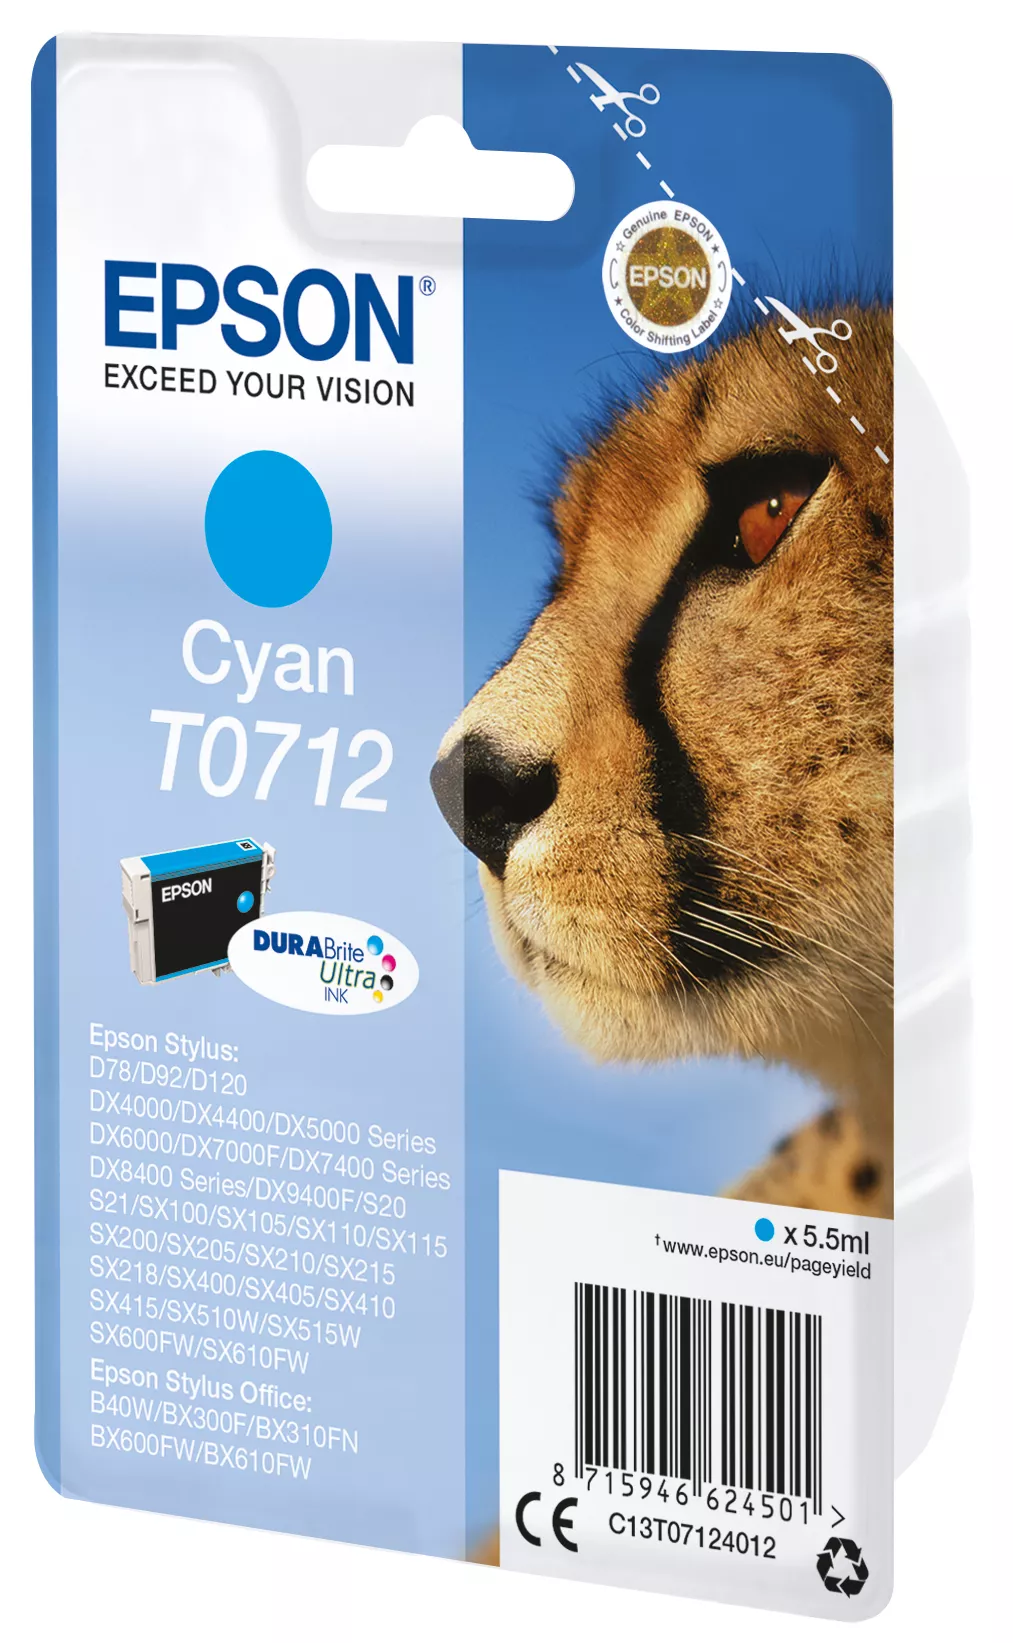 Vente EPSON T0712 cartouche dencre cyan capacité standard 5.5ml Epson au meilleur prix - visuel 2